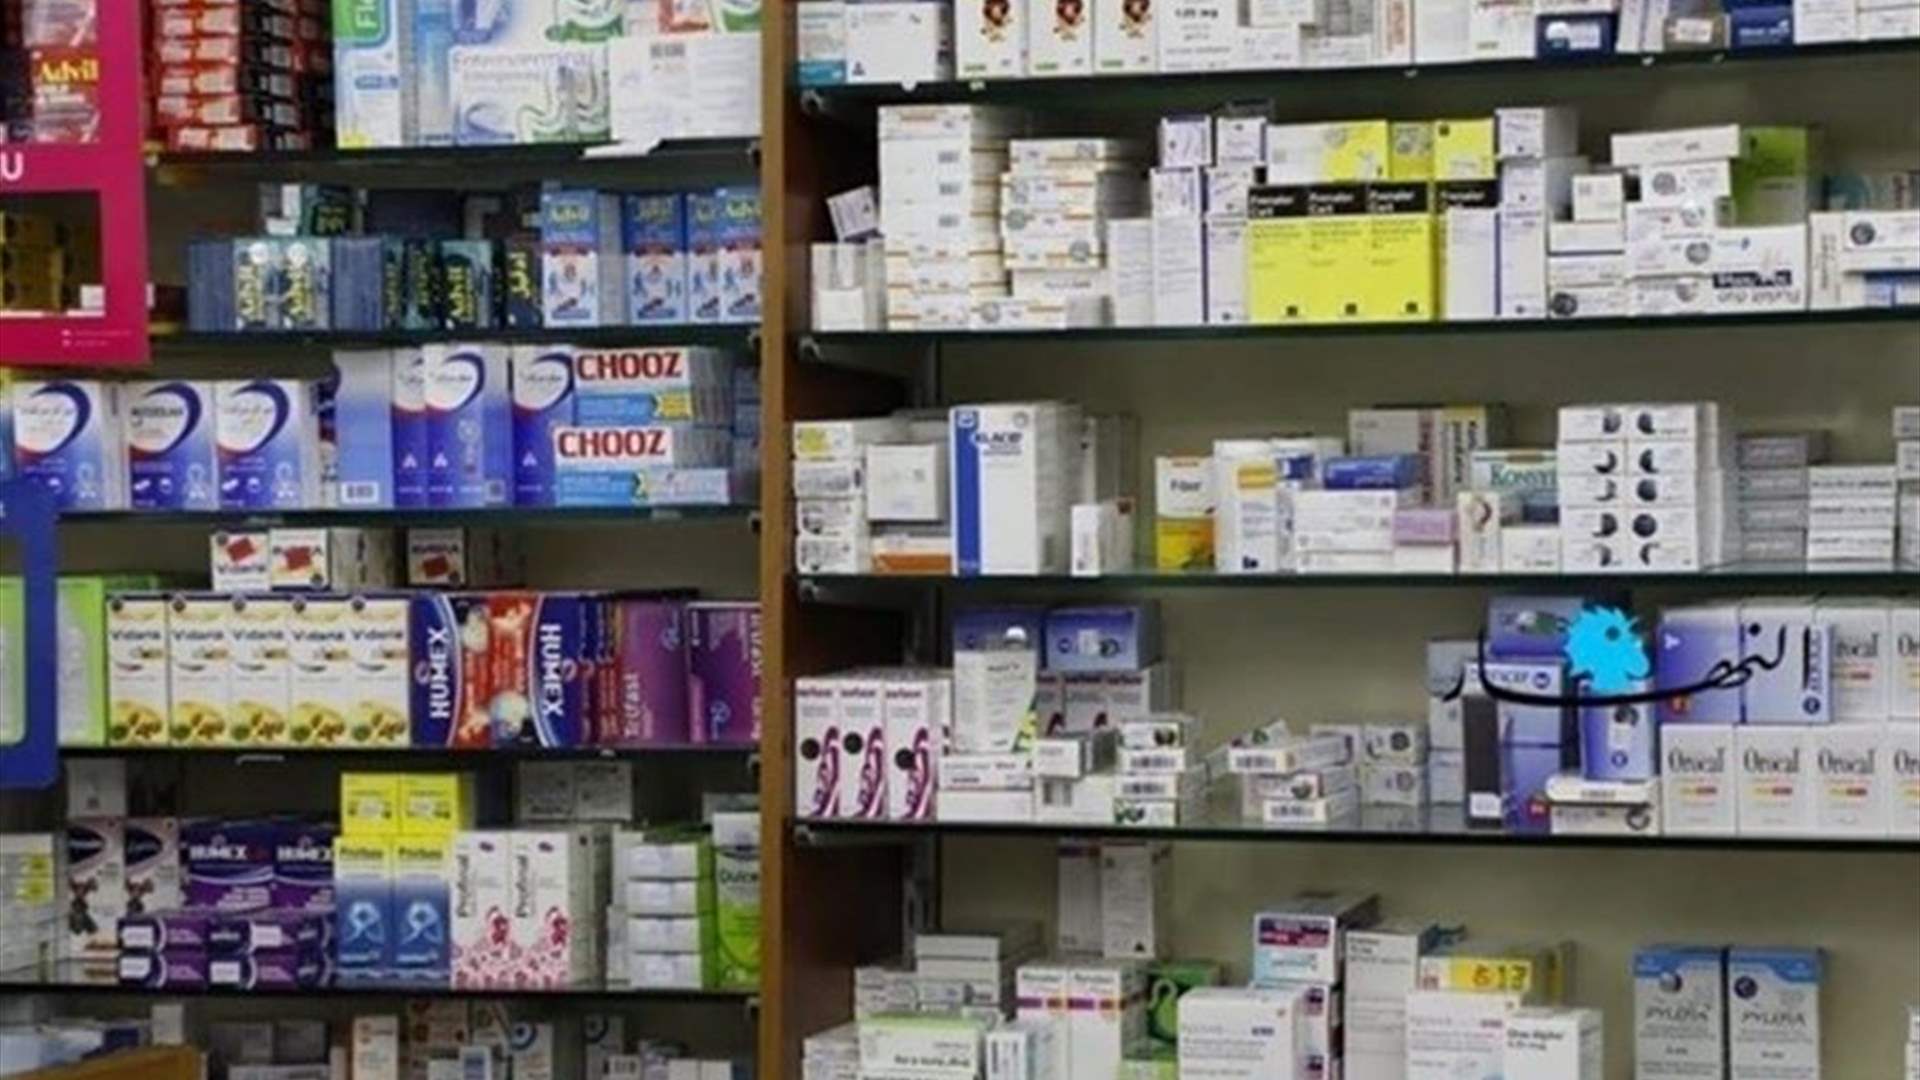 وزارة الصحة ستصدر مؤشر أسعار يومي للأدوية غير المدعومة